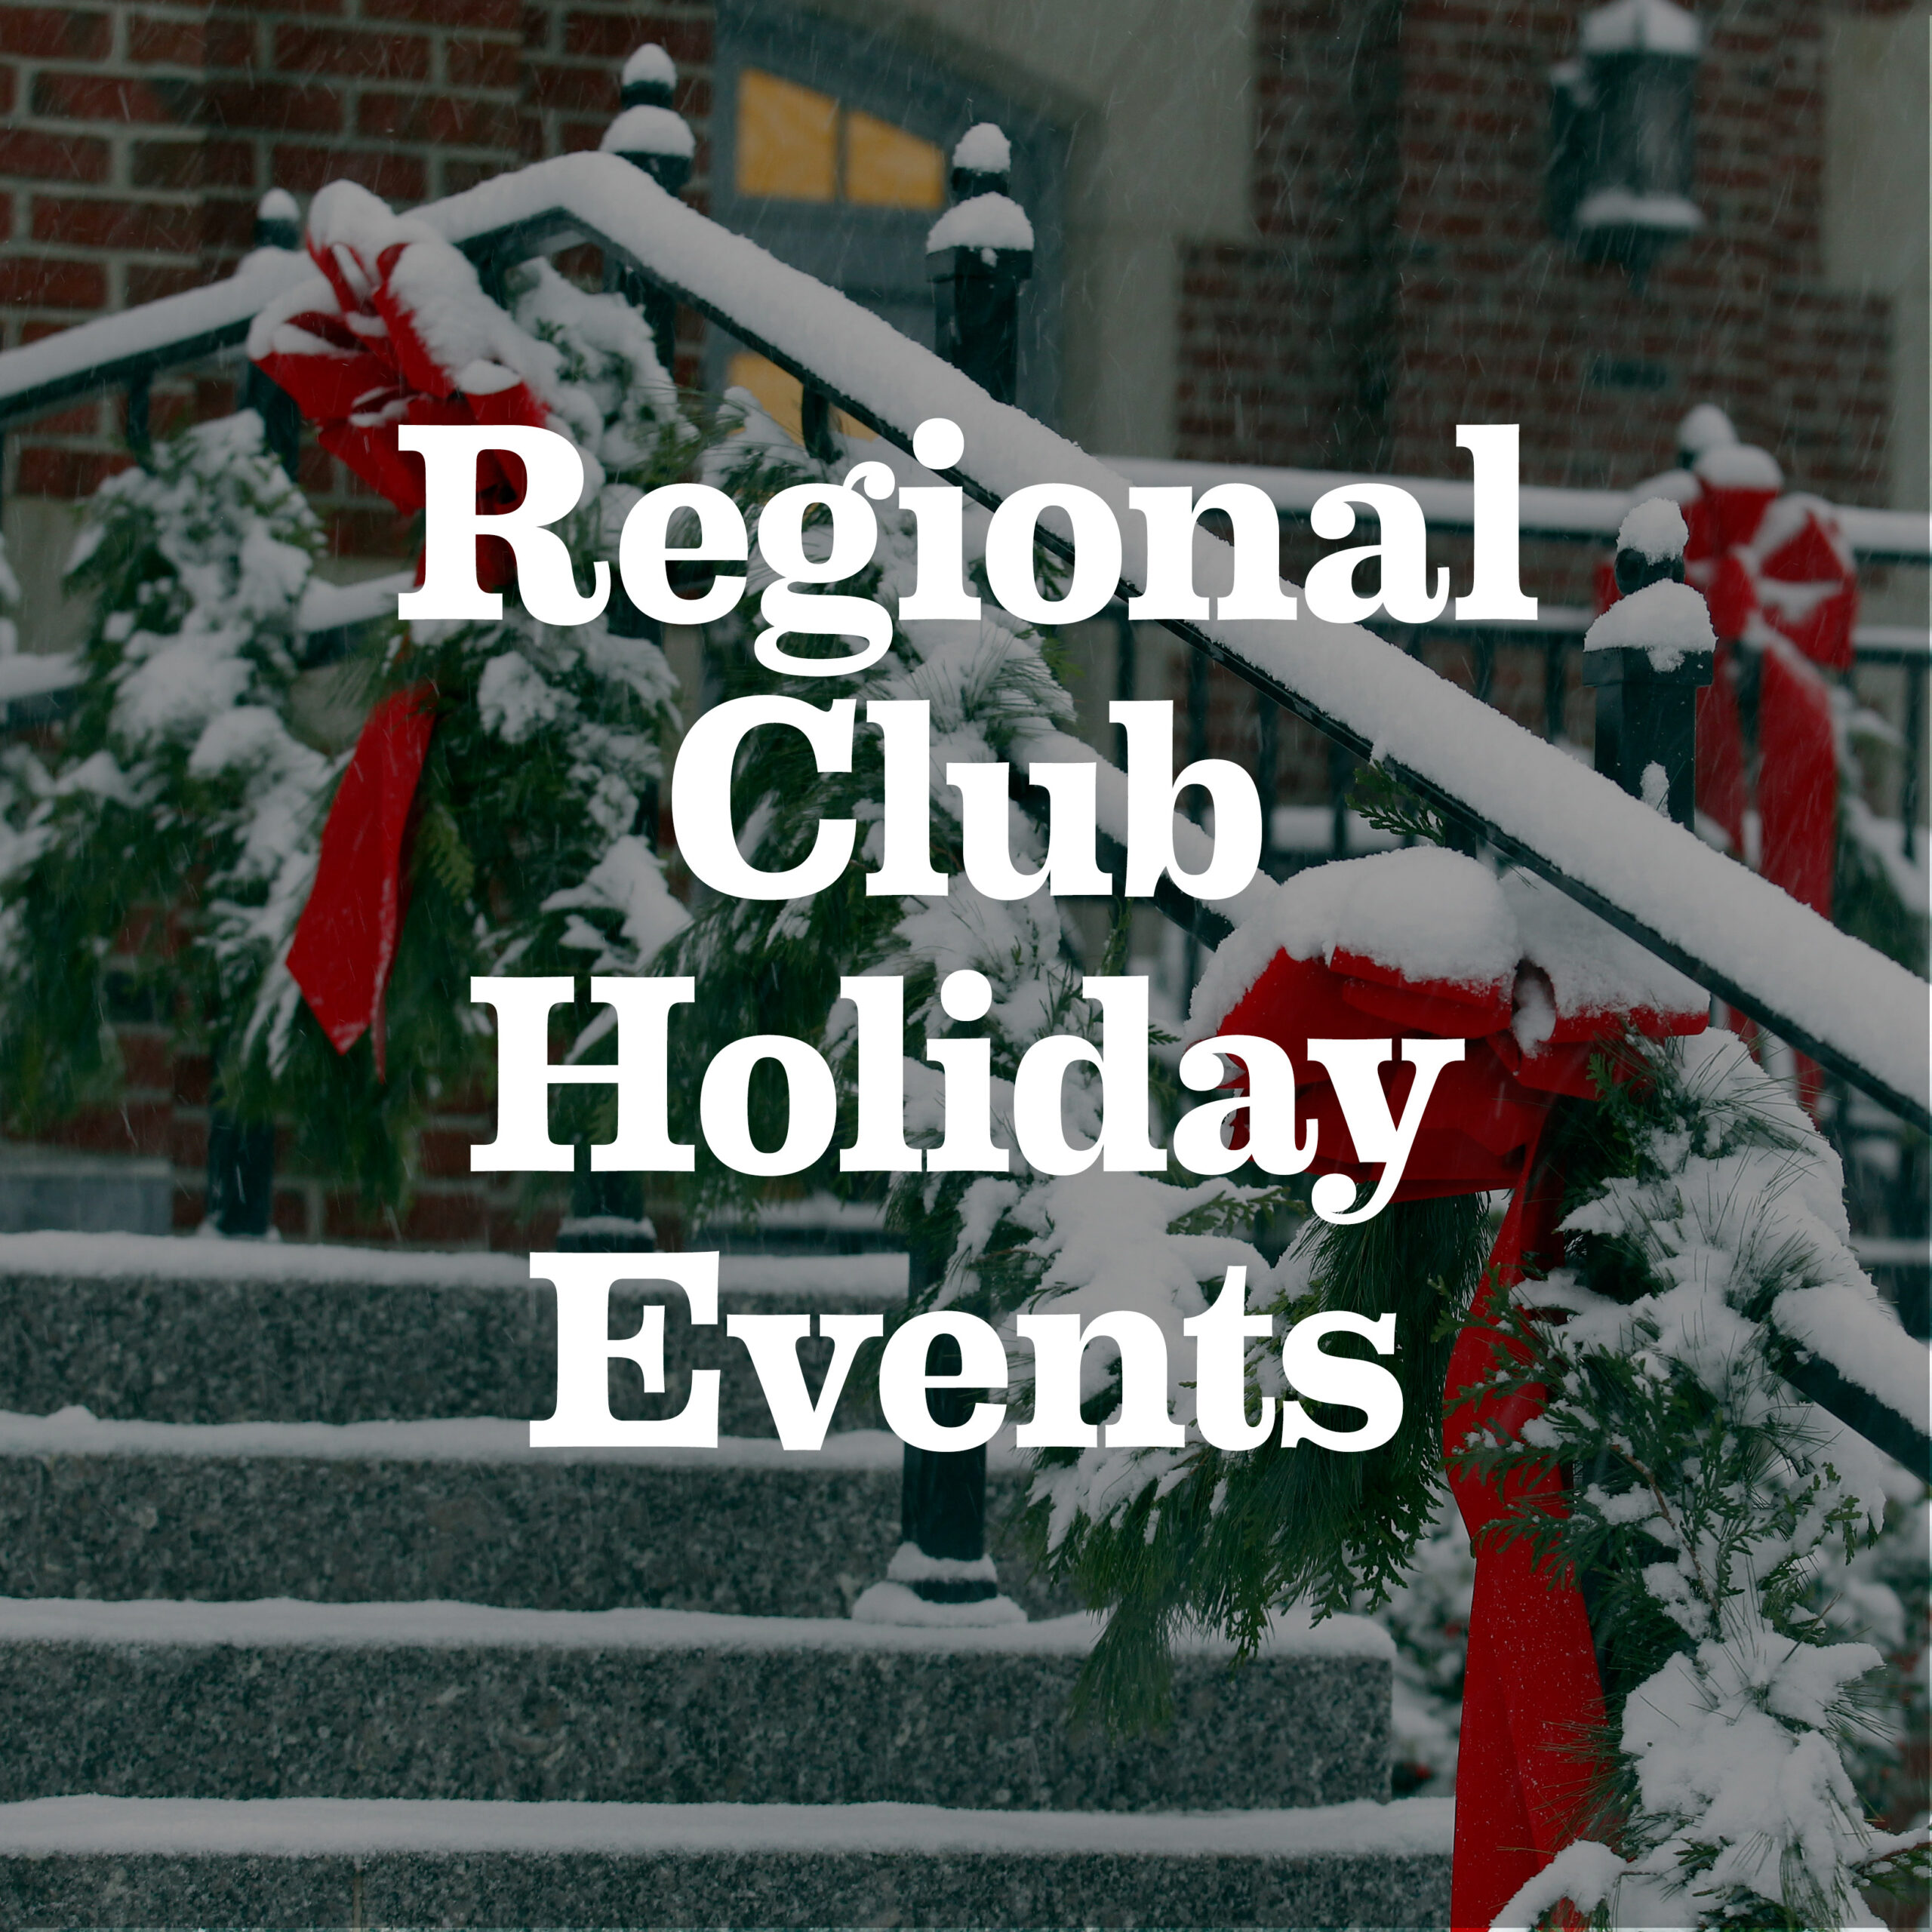 Regional Club Holiday Events